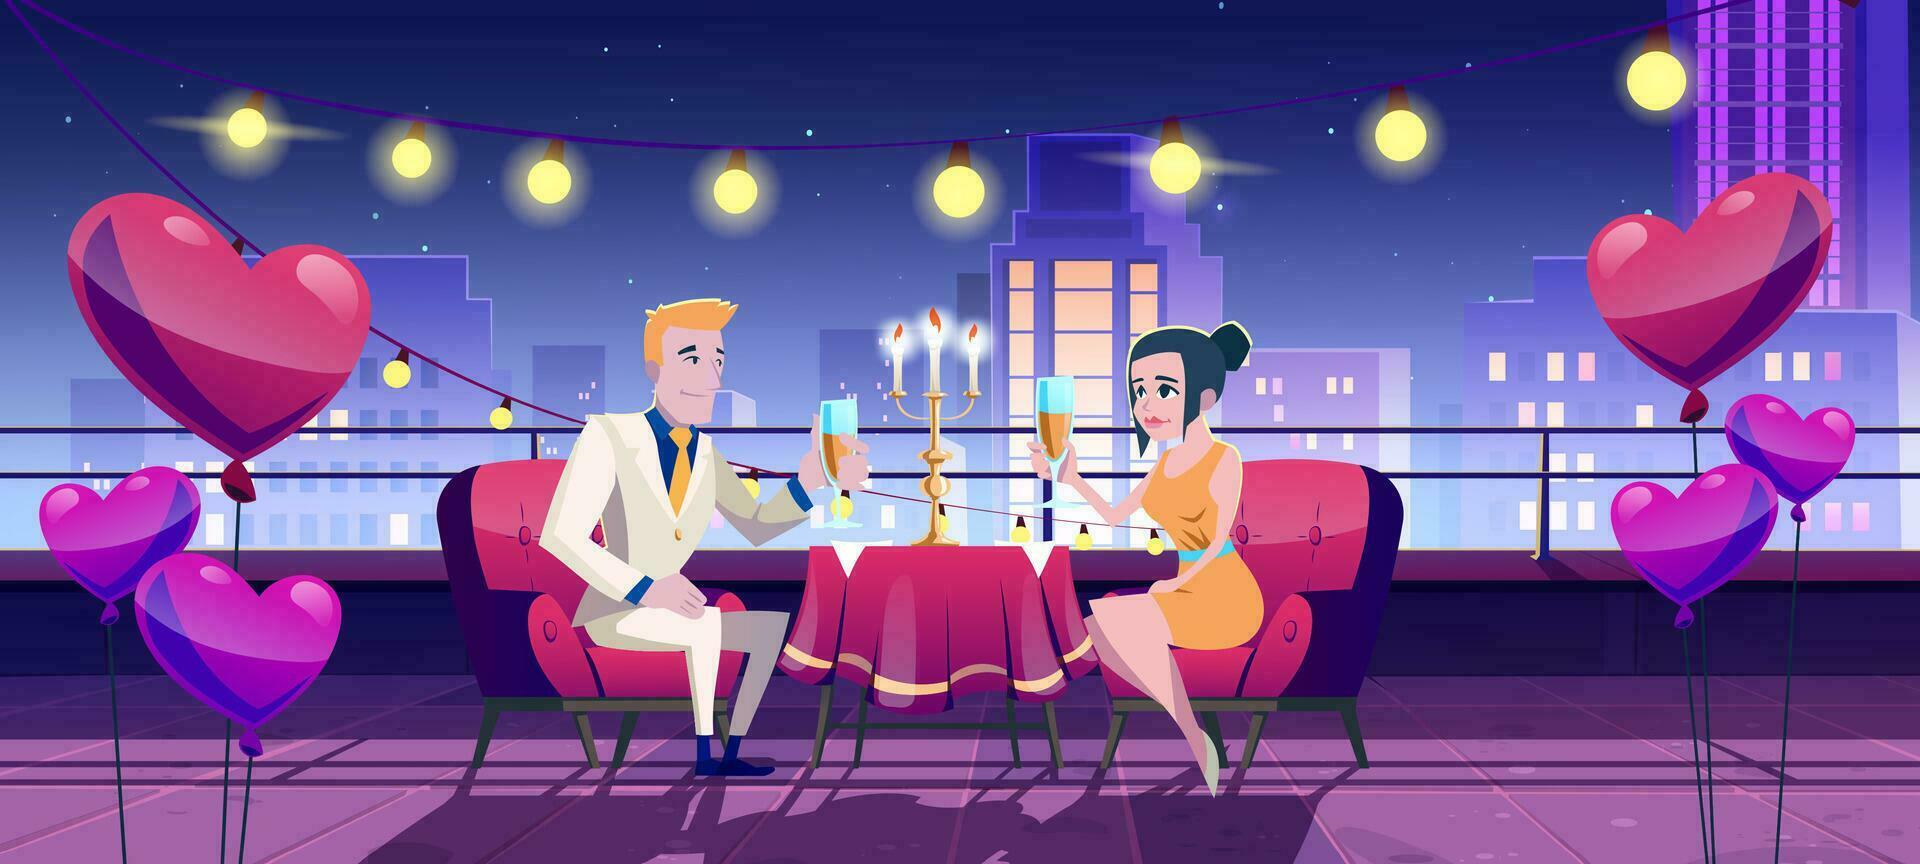 romántico cena fecha a noche en ciudad terraza vector